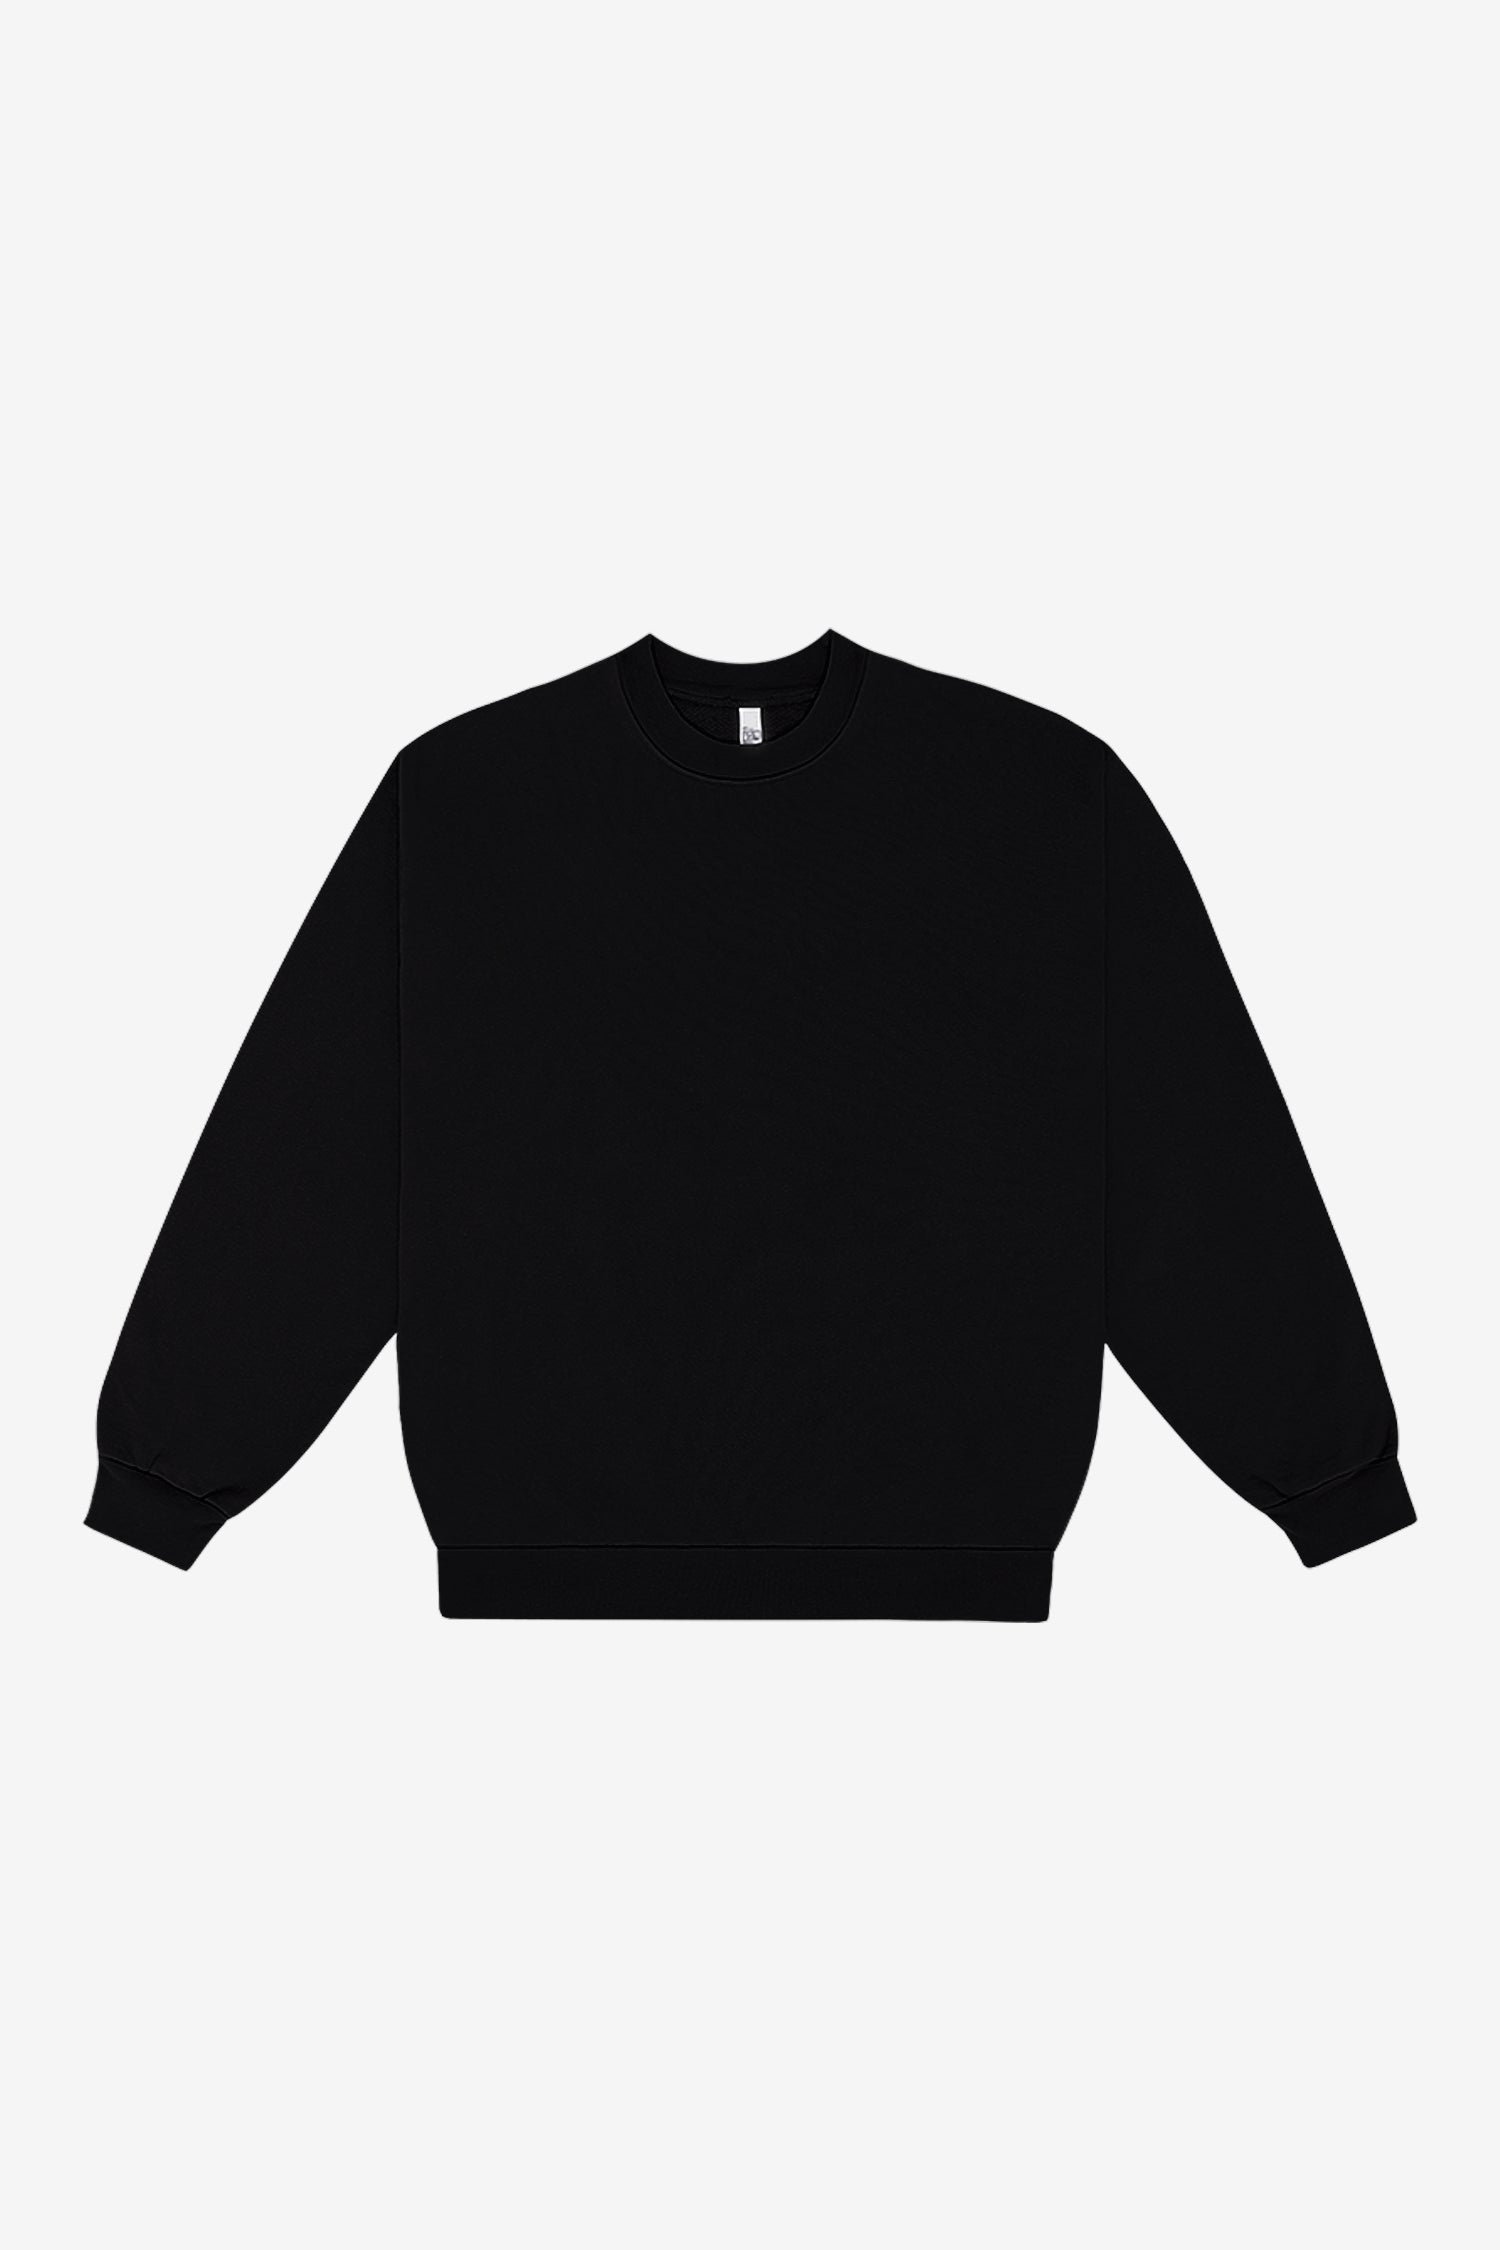 HF07 - Heavy Fleece Crewneck Sweatshirt (Garment Dye)